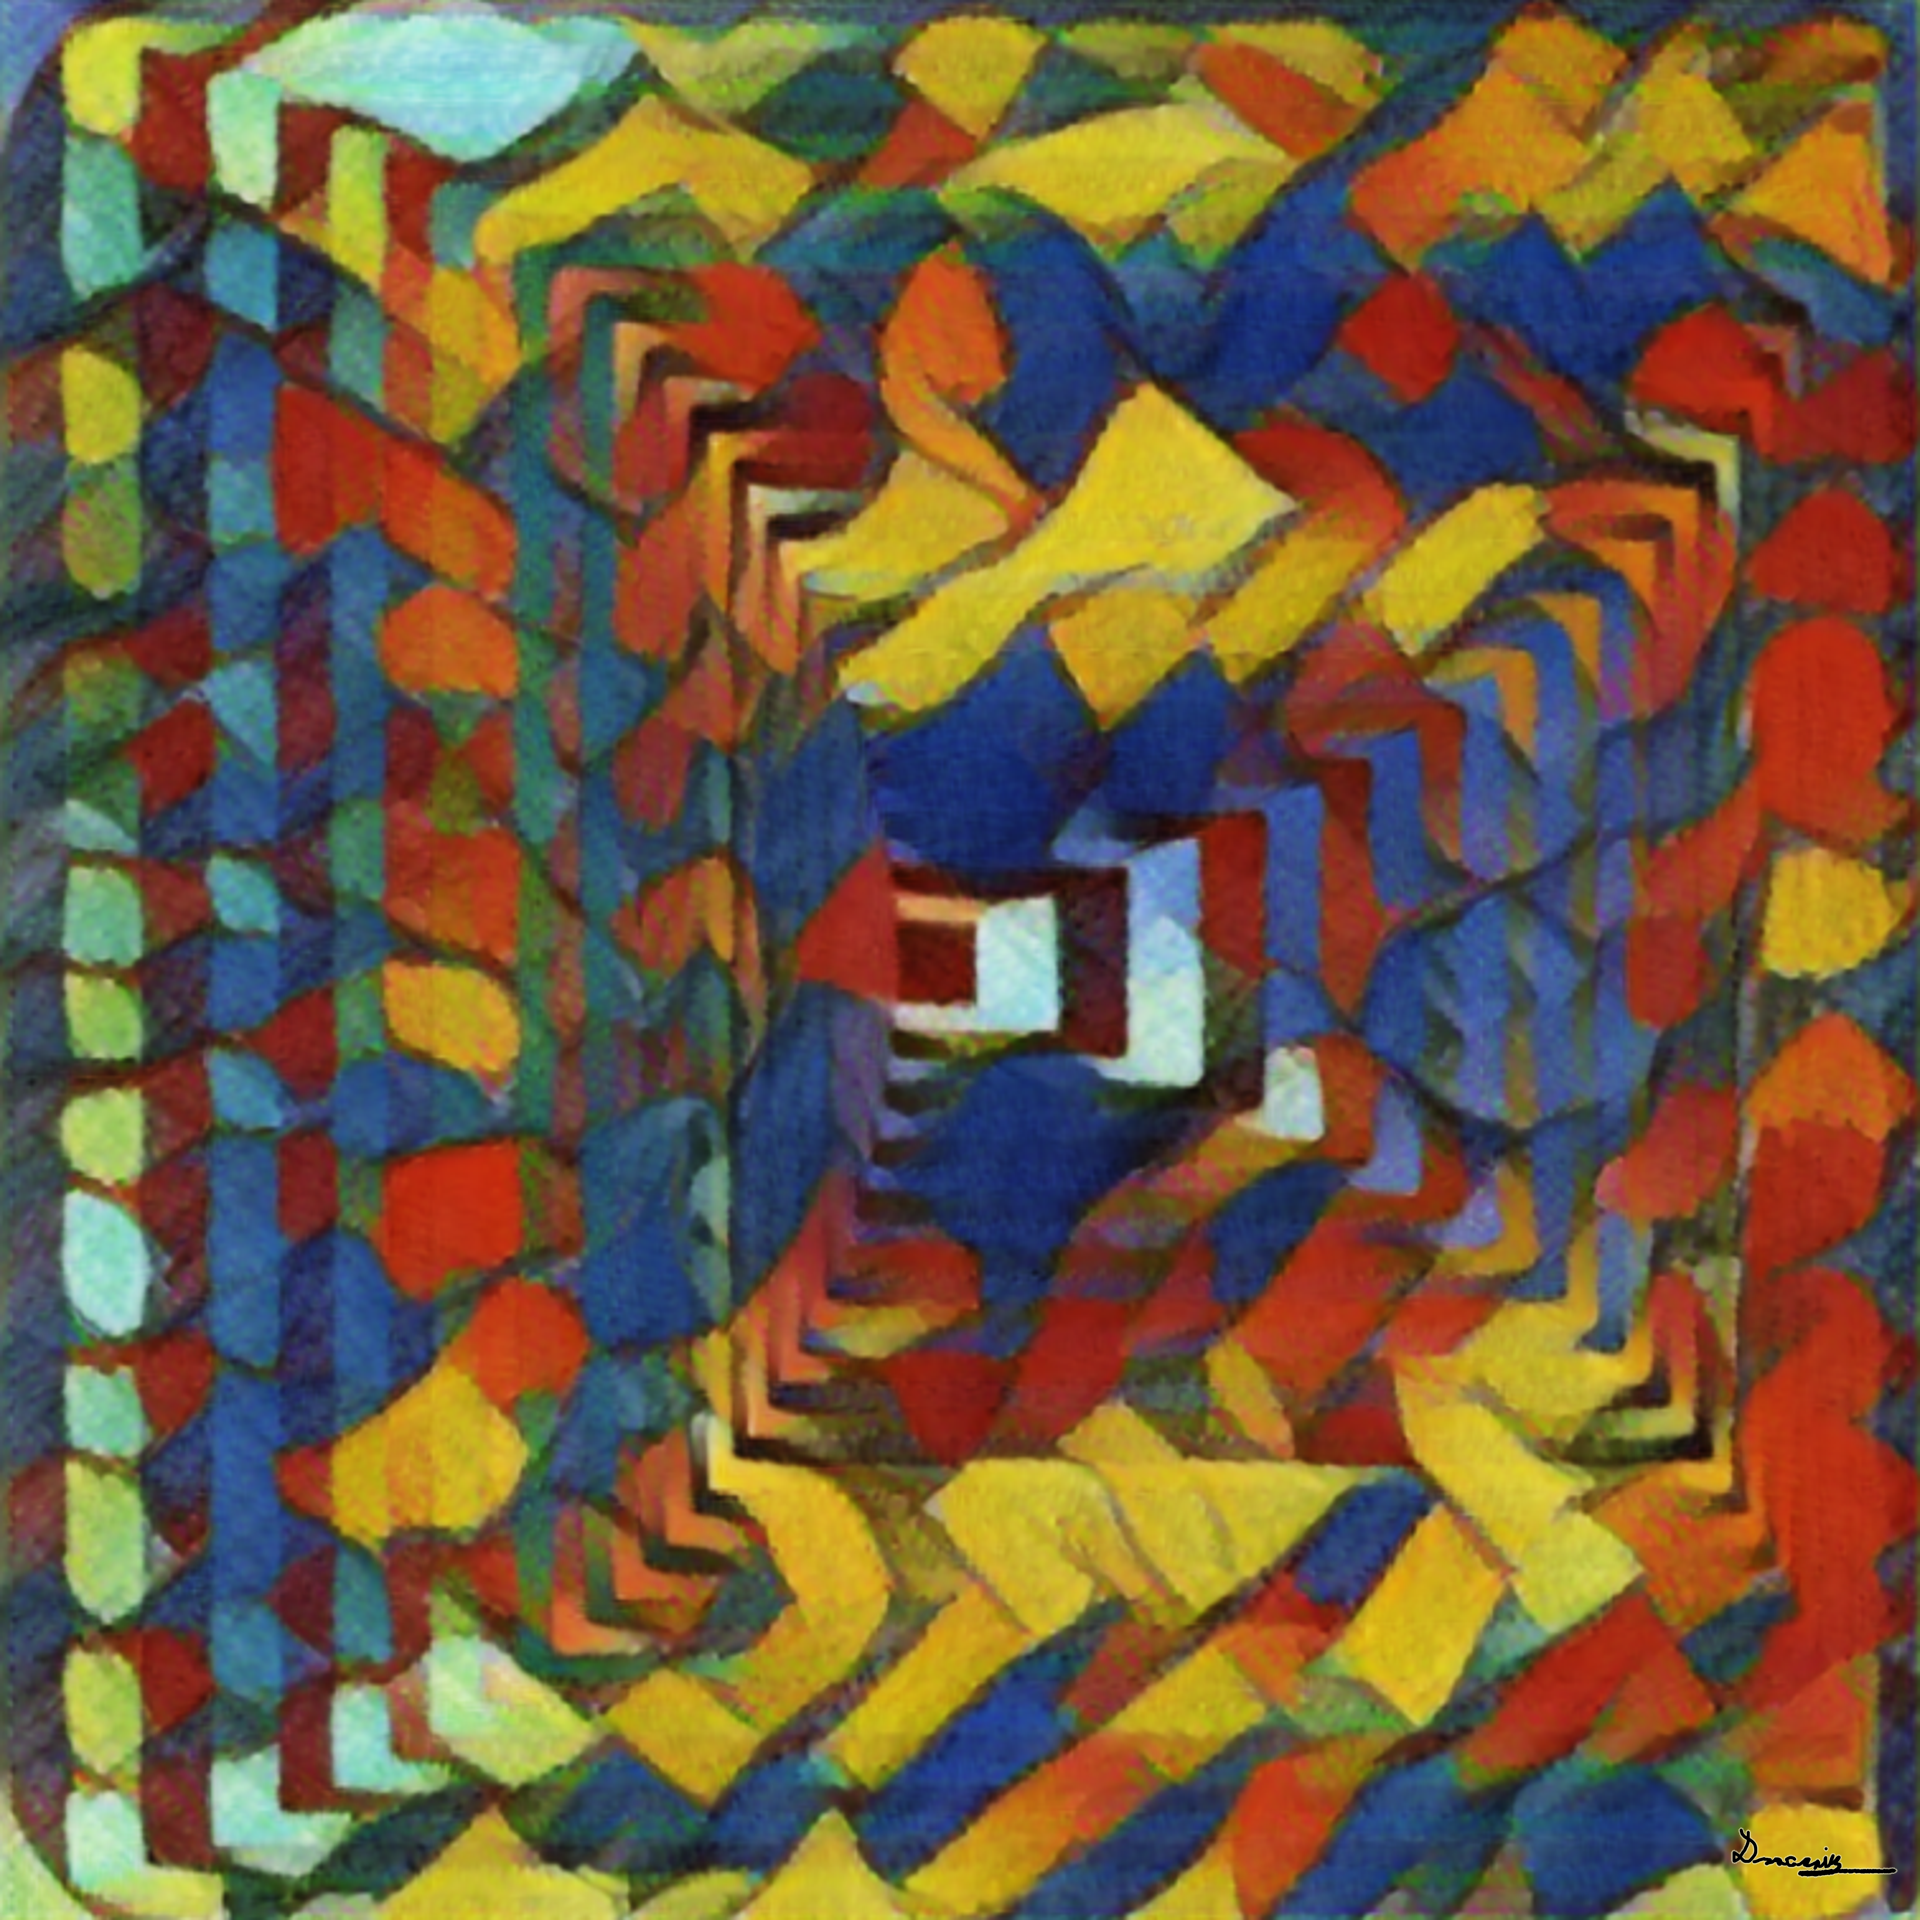 Victor Vasarely, Vonal-Stri (1975)